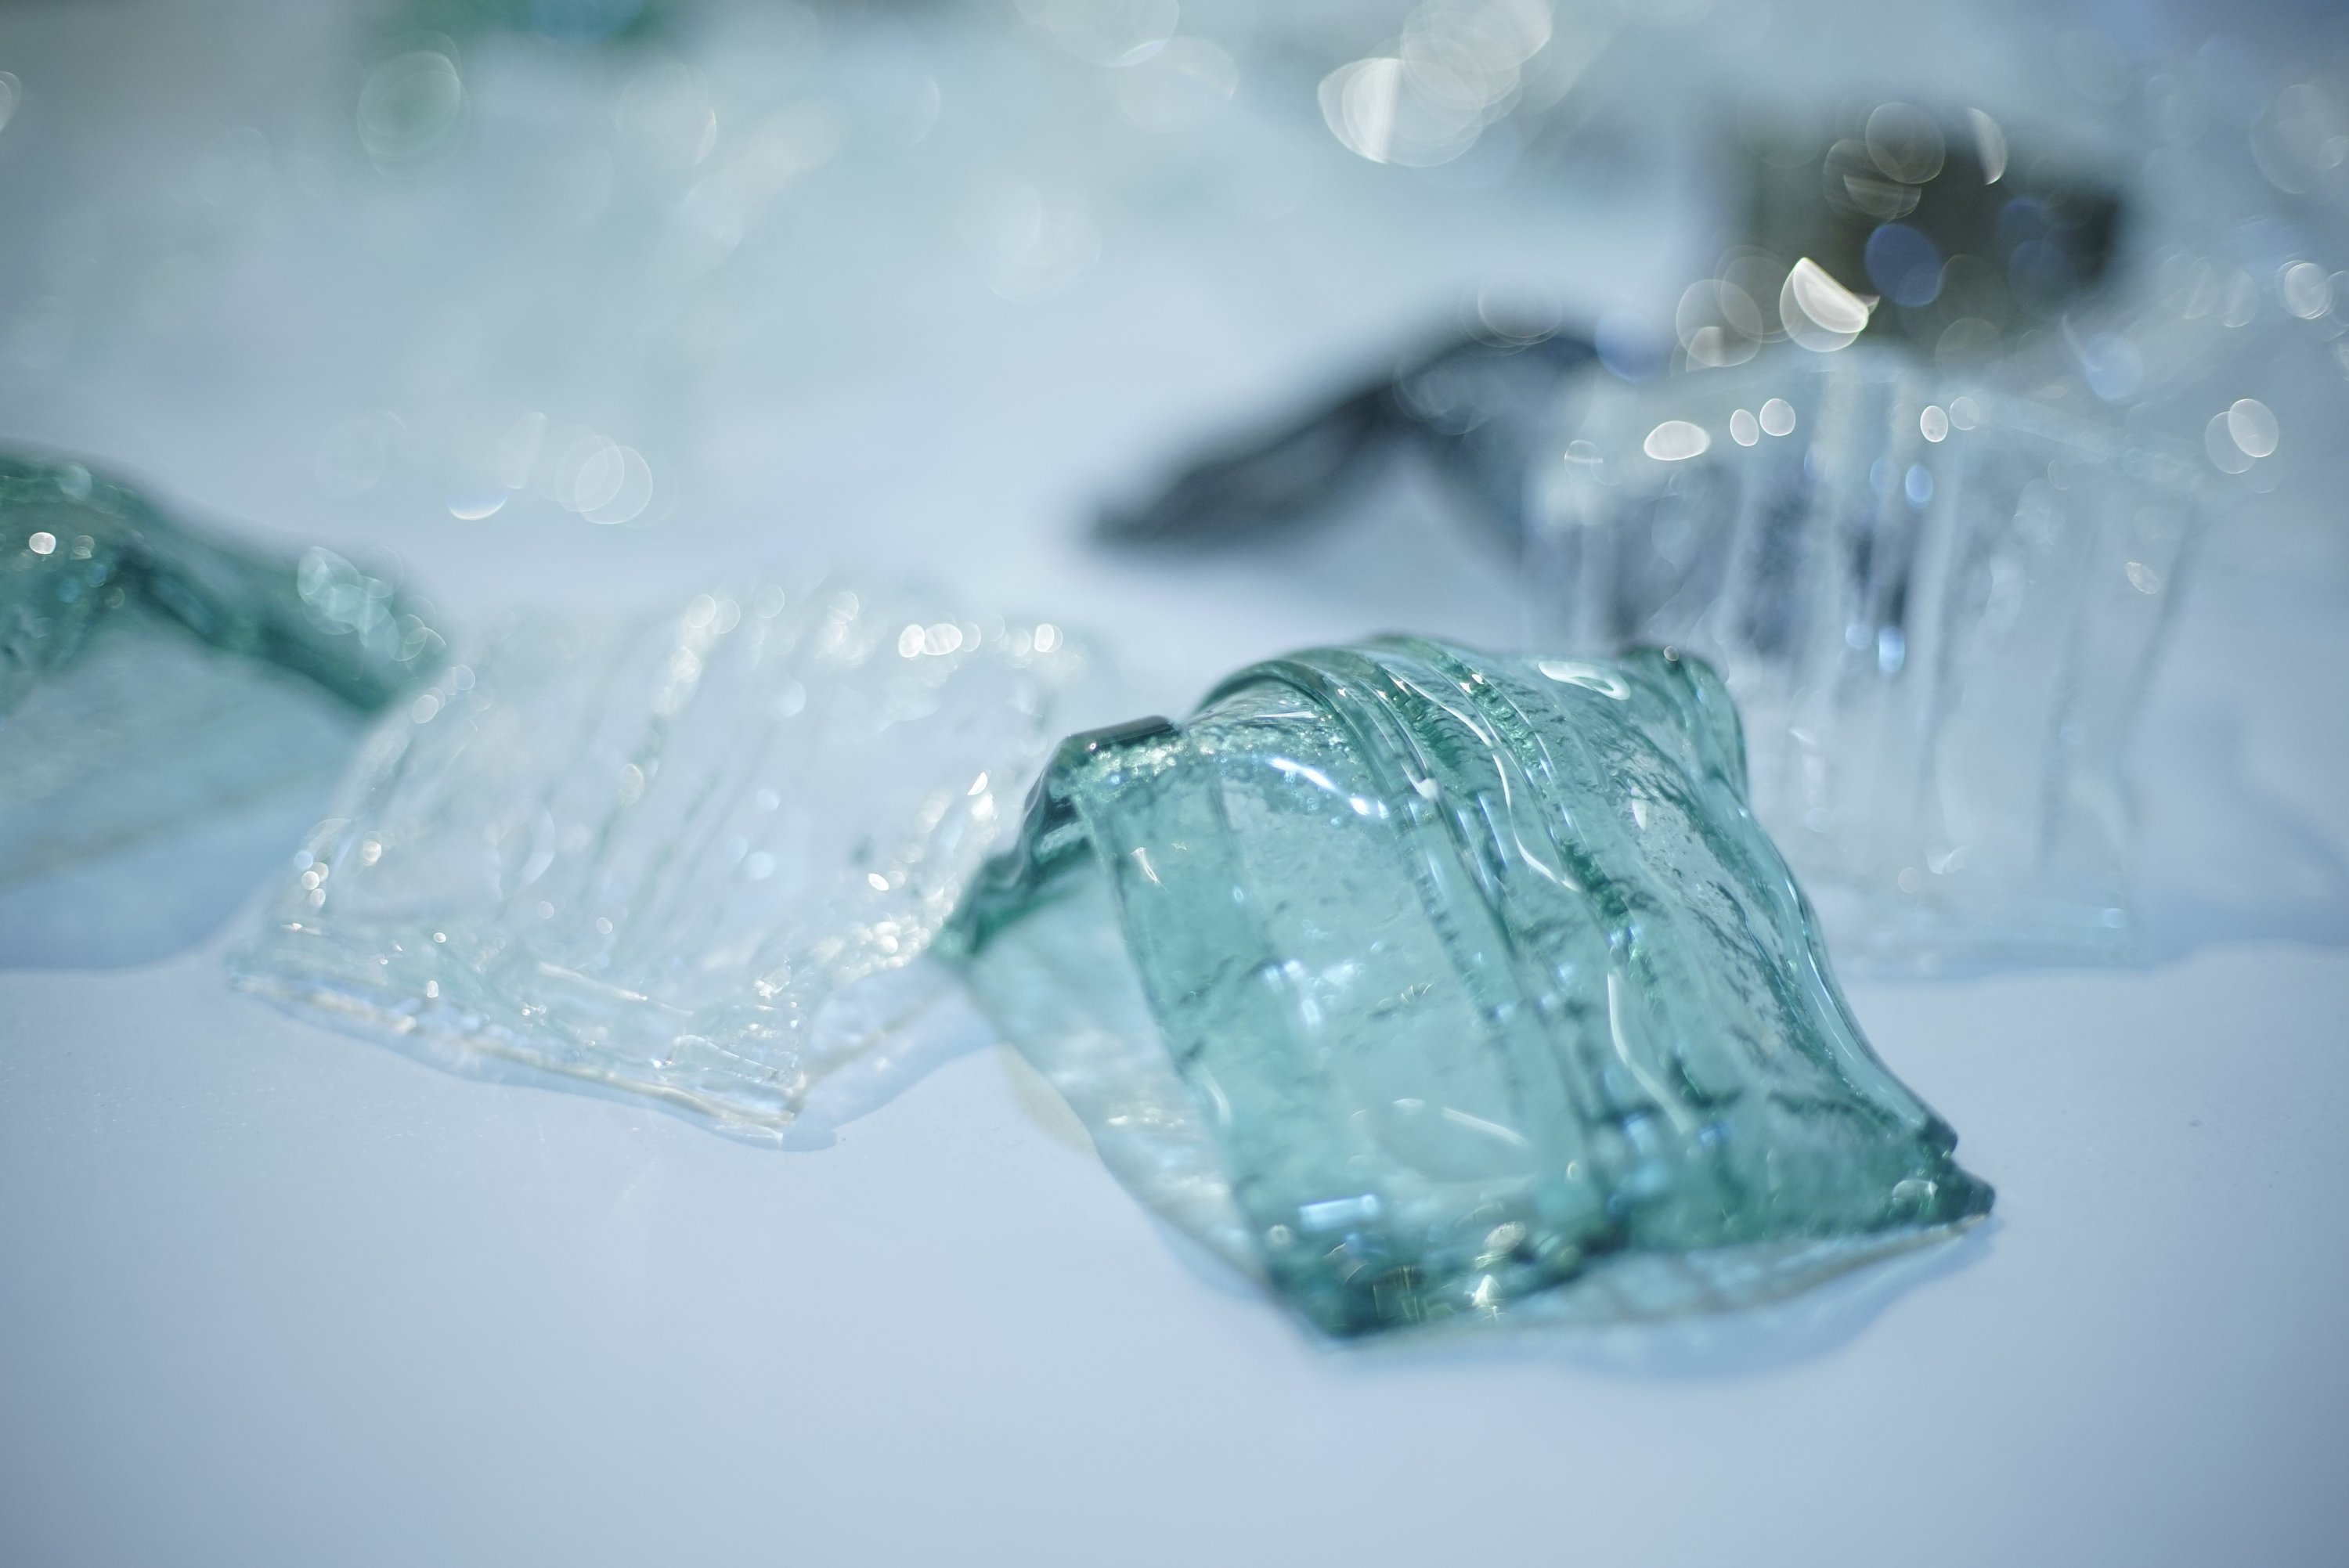 Felekşan Onar, "GetmePPE," glass installation, each 15 by 6 by 5 centimeters.